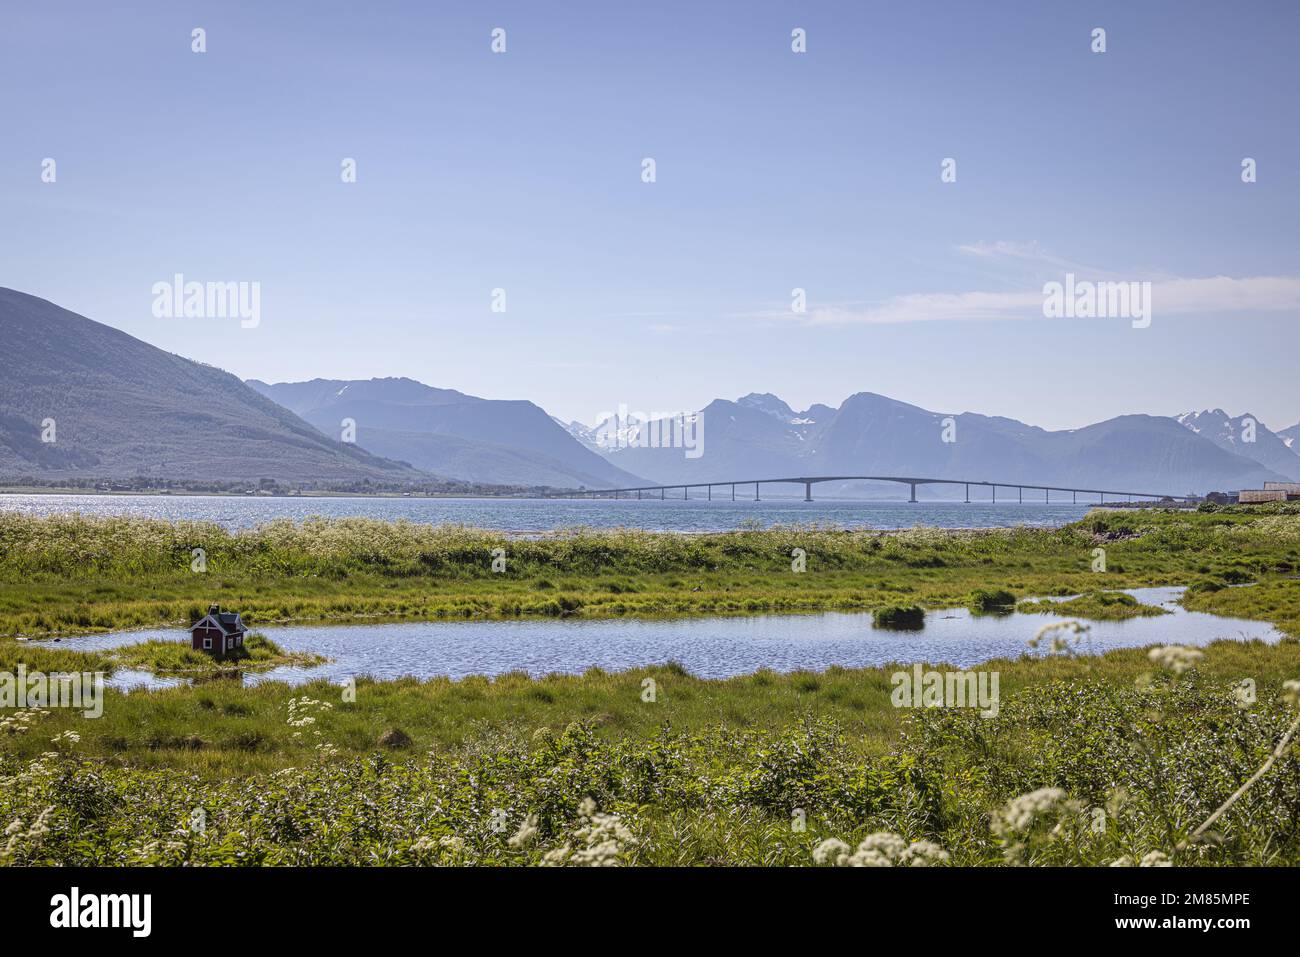 Maison de canard sur le lac par le pont de Sortland, Vesteralen, Nordland, Norvège Banque D'Images